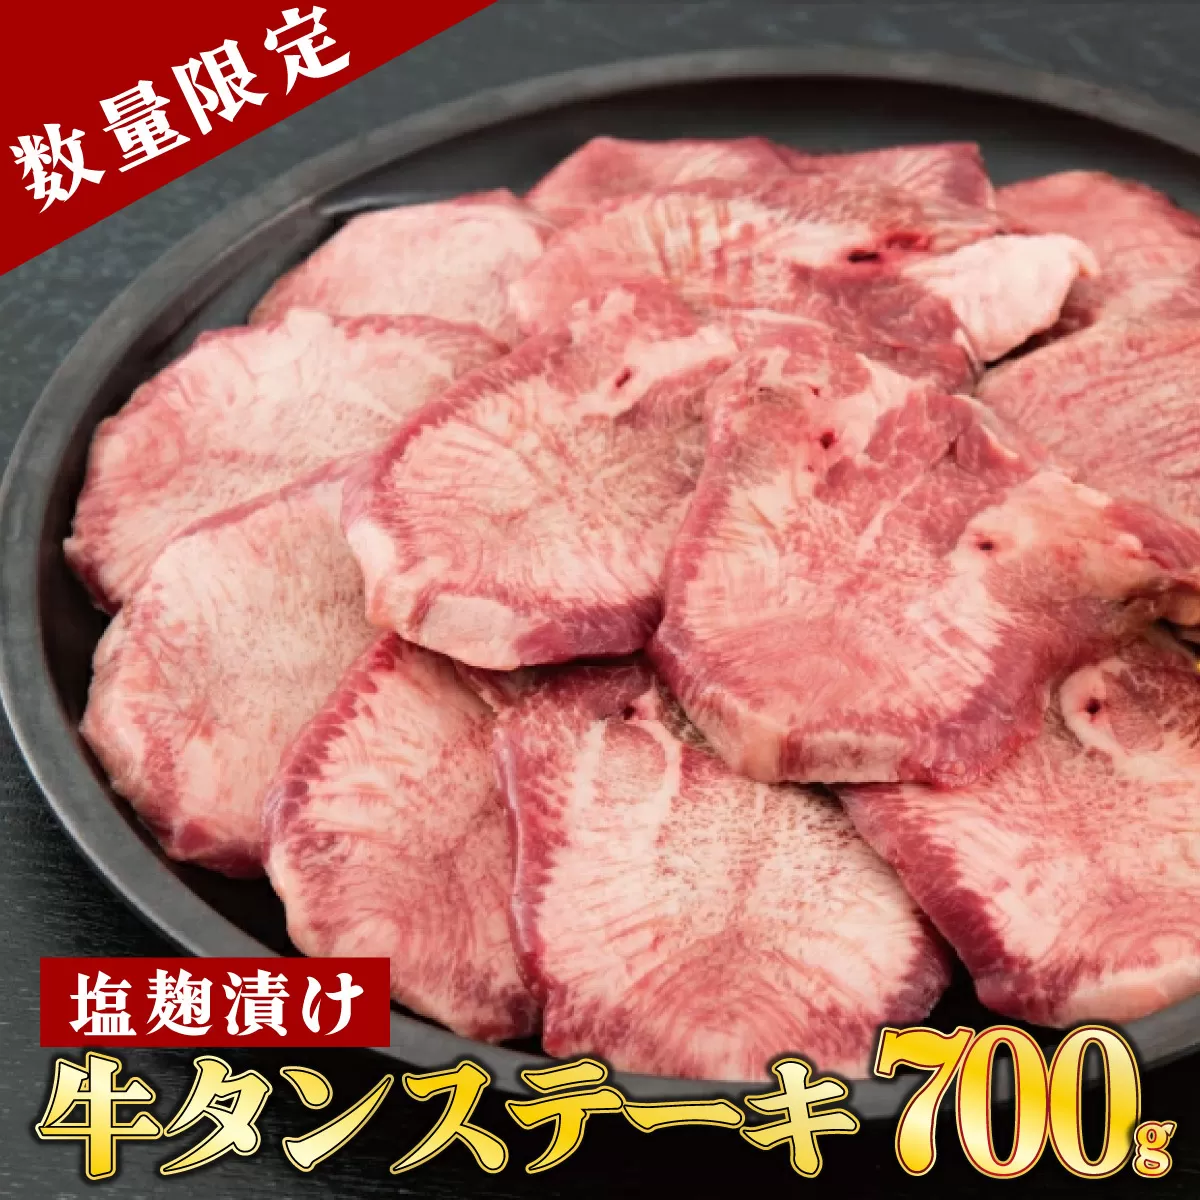 【数量限定】700g 塩麹漬け 牛タンステーキ 